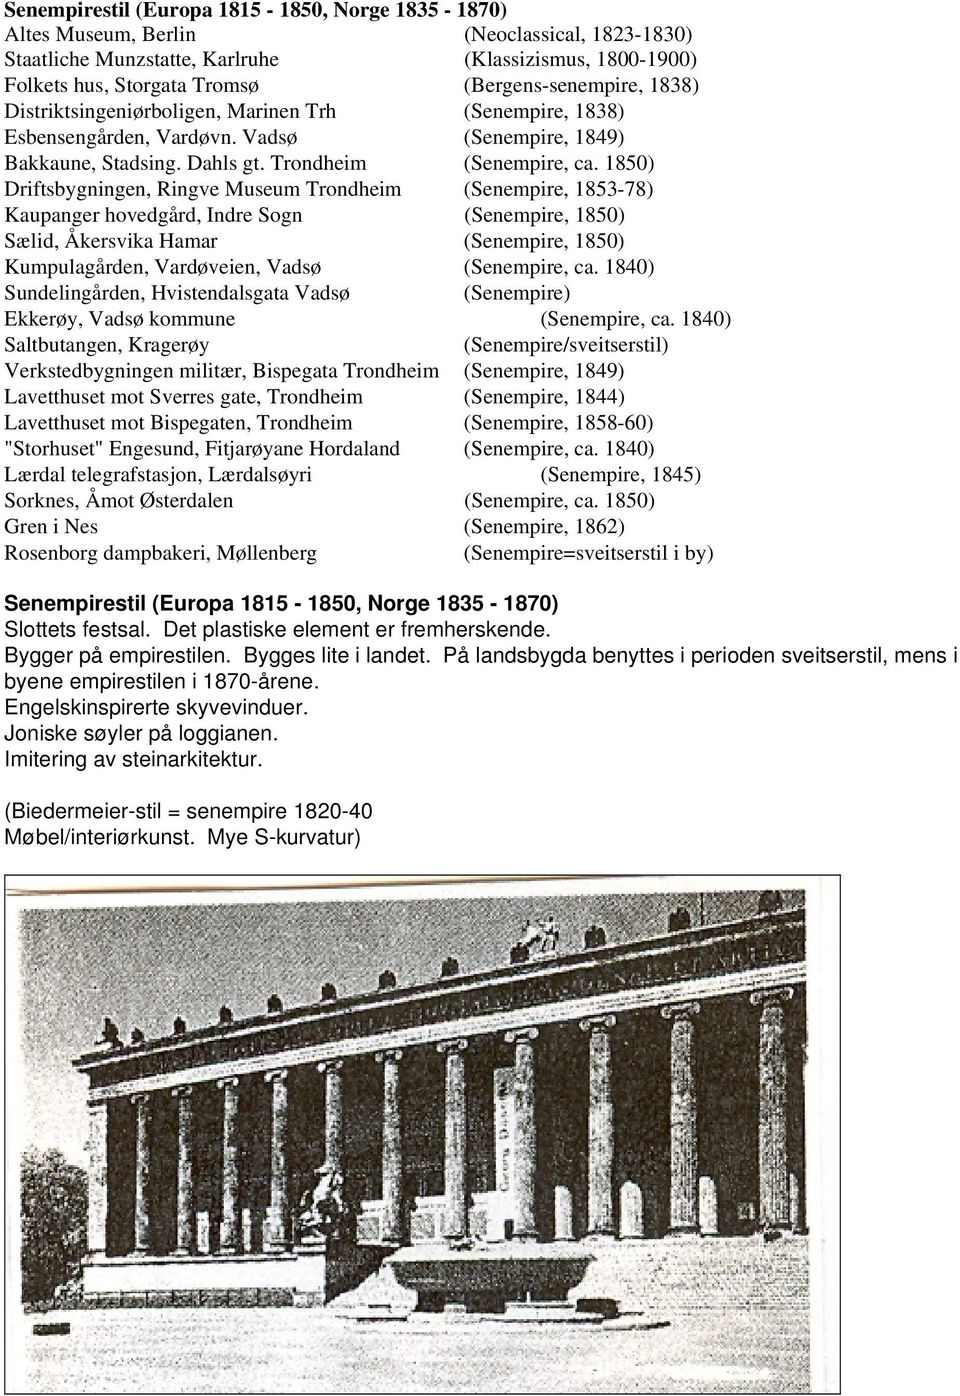 1850) Driftsbygningen, Ringve Museum Trondheim (Senempire, 1853-78) Kaupanger hovedgård, Indre Sogn (Senempire, 1850) Sælid, Åkersvika Hamar (Senempire, 1850) Kumpulagården, Vardøveien, Vadsø